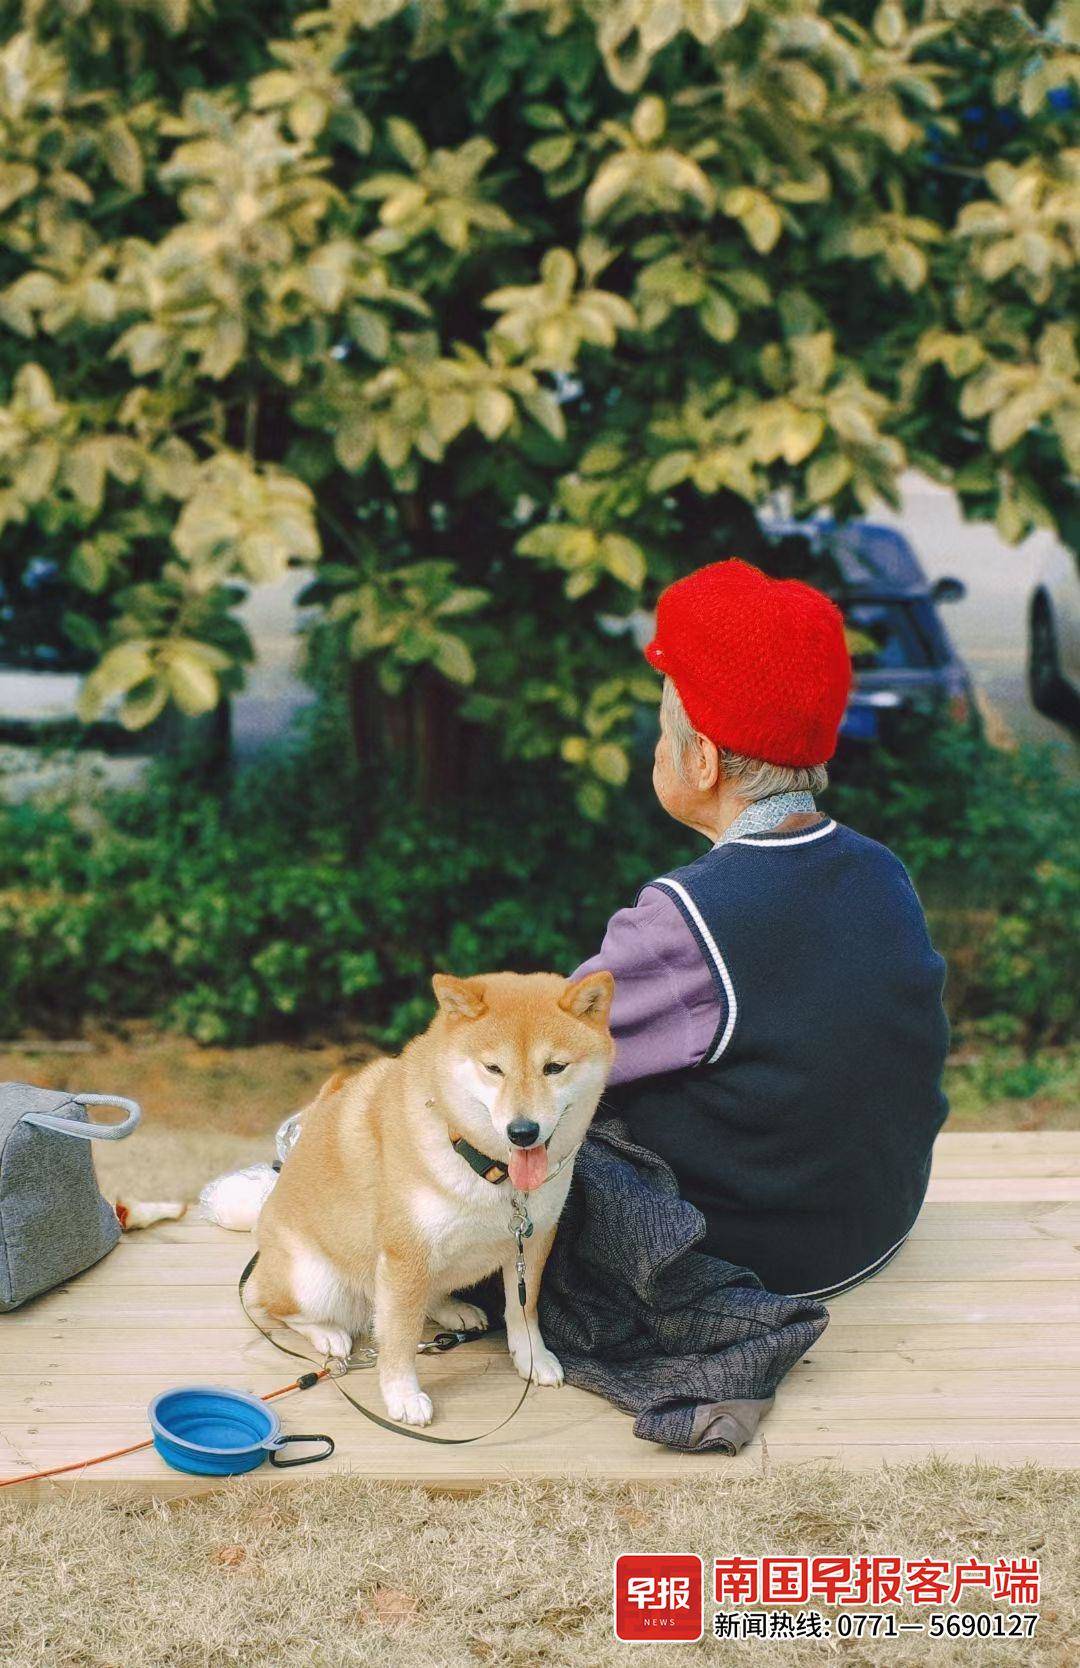 ▲文明出行，旅游的小狗也能和身边的人和平相处。图片均为受访者提供